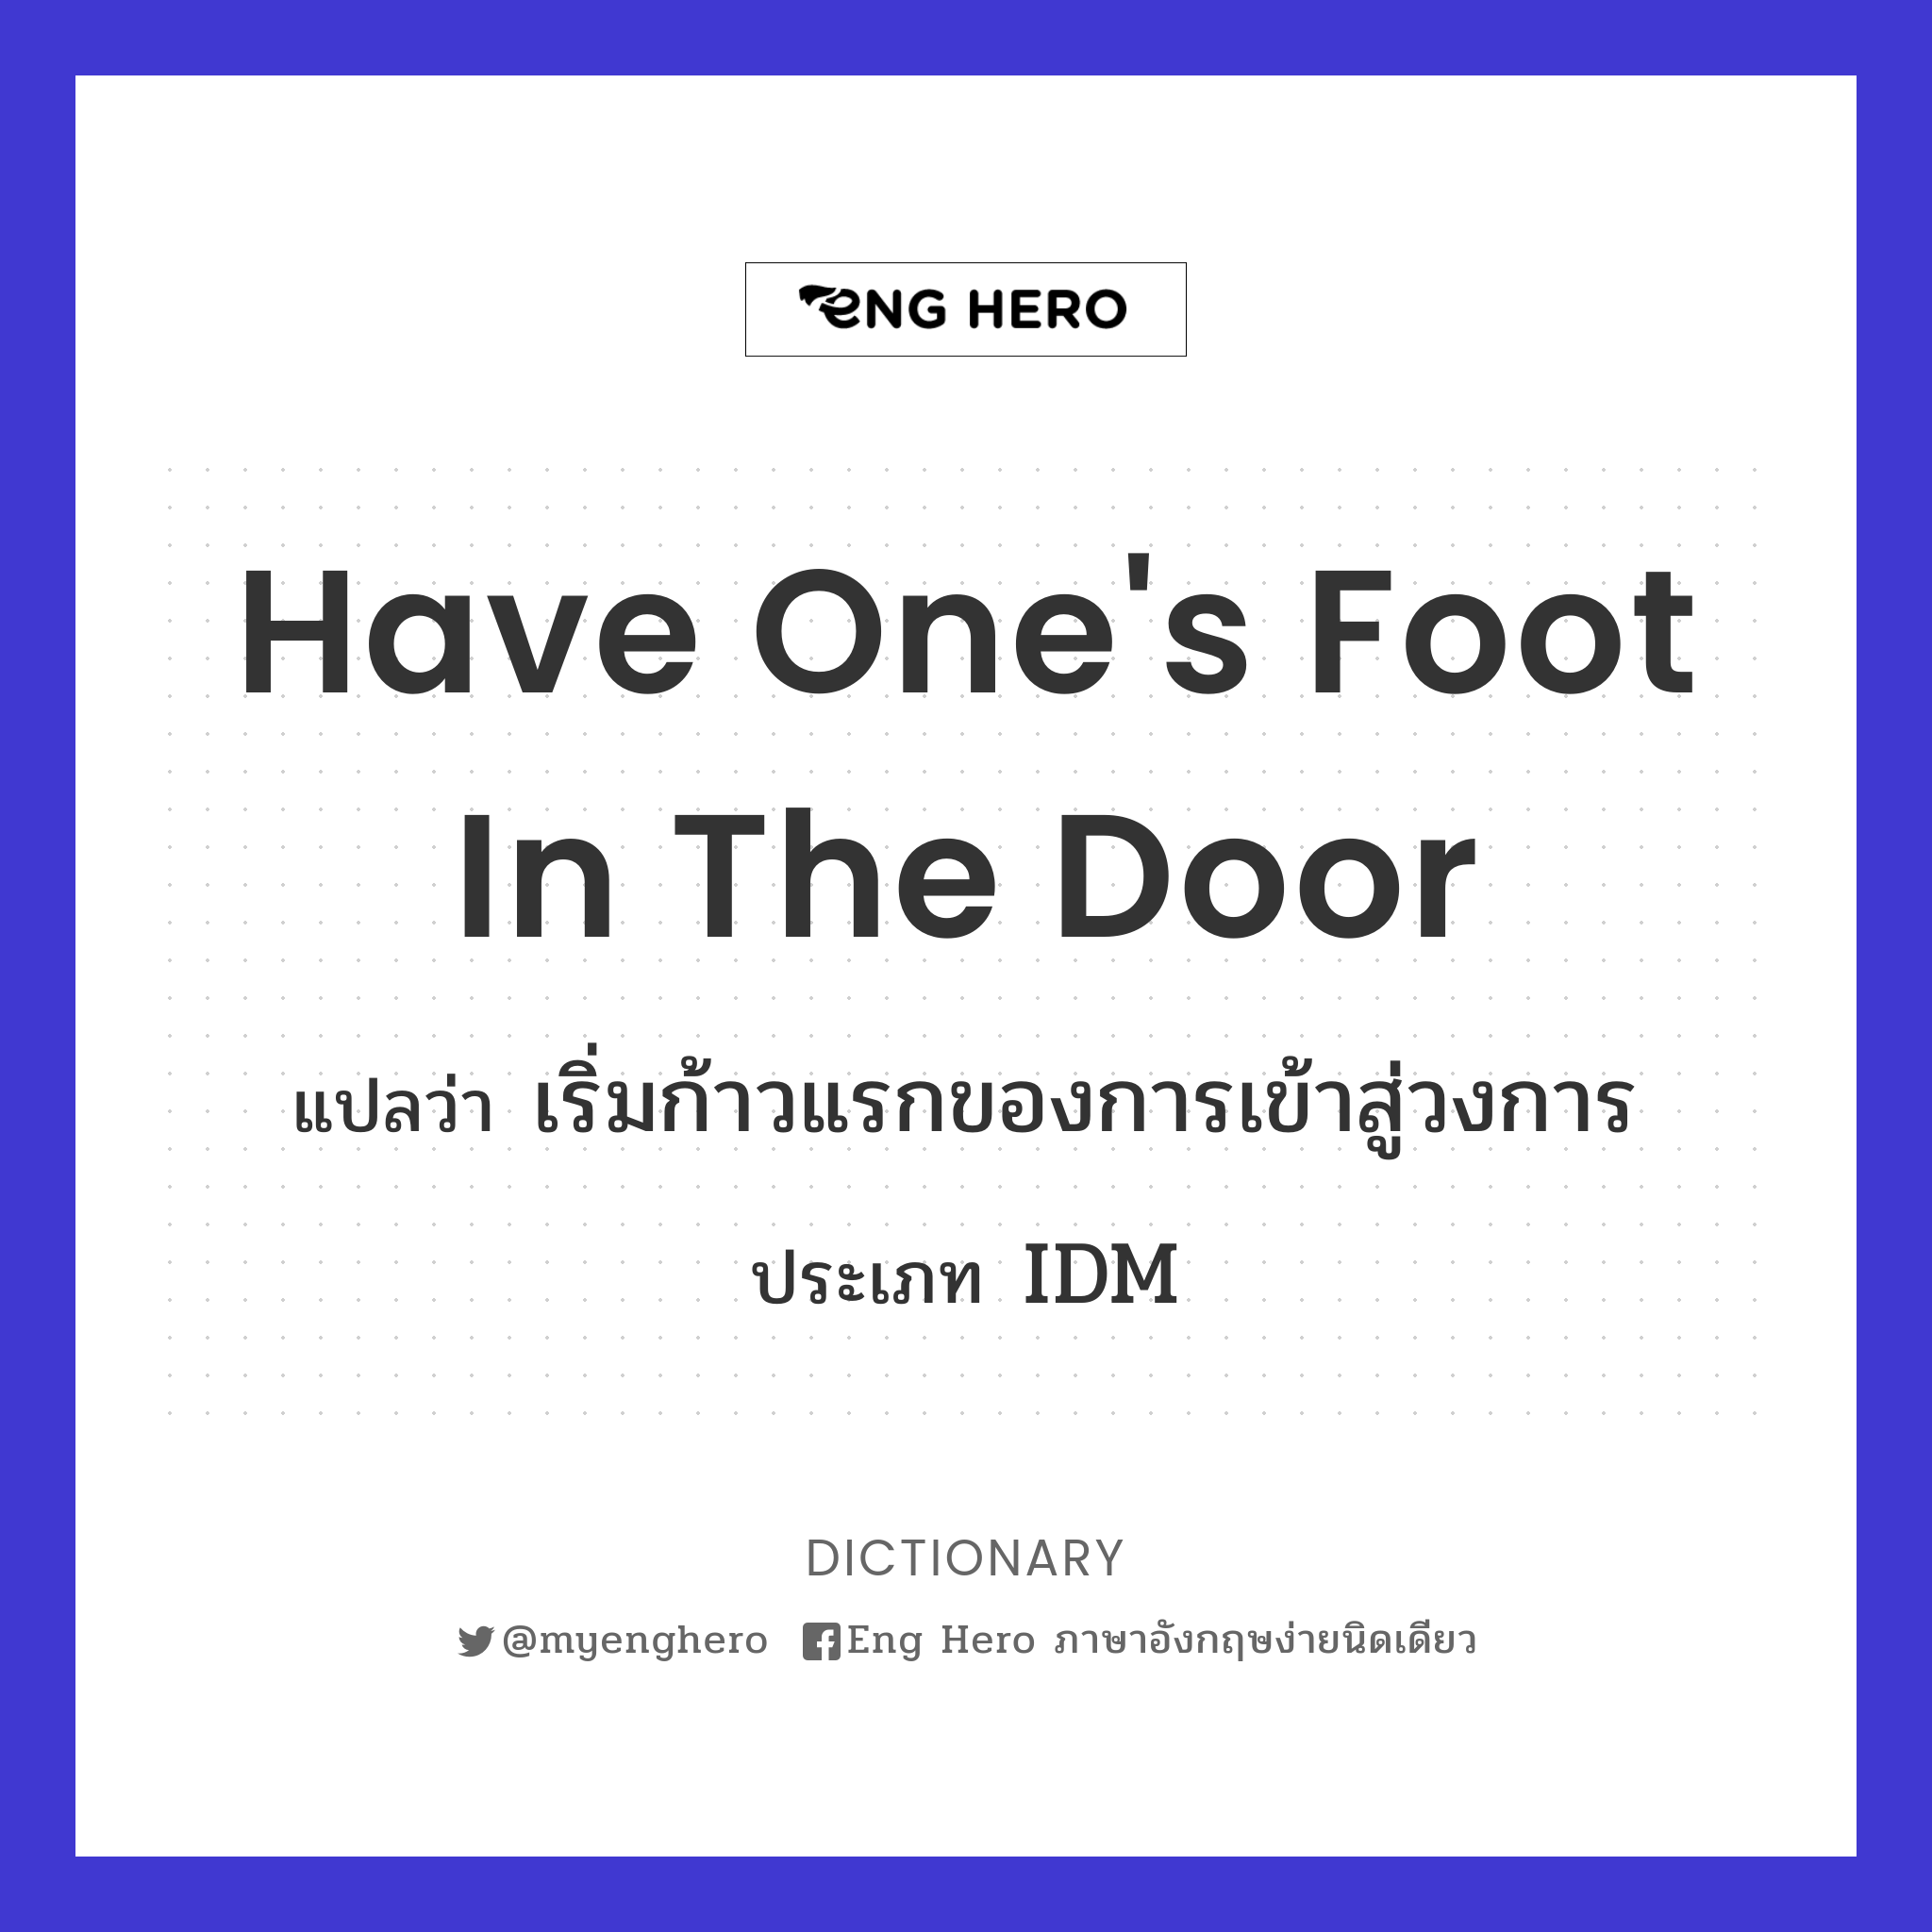 have one's foot in the door